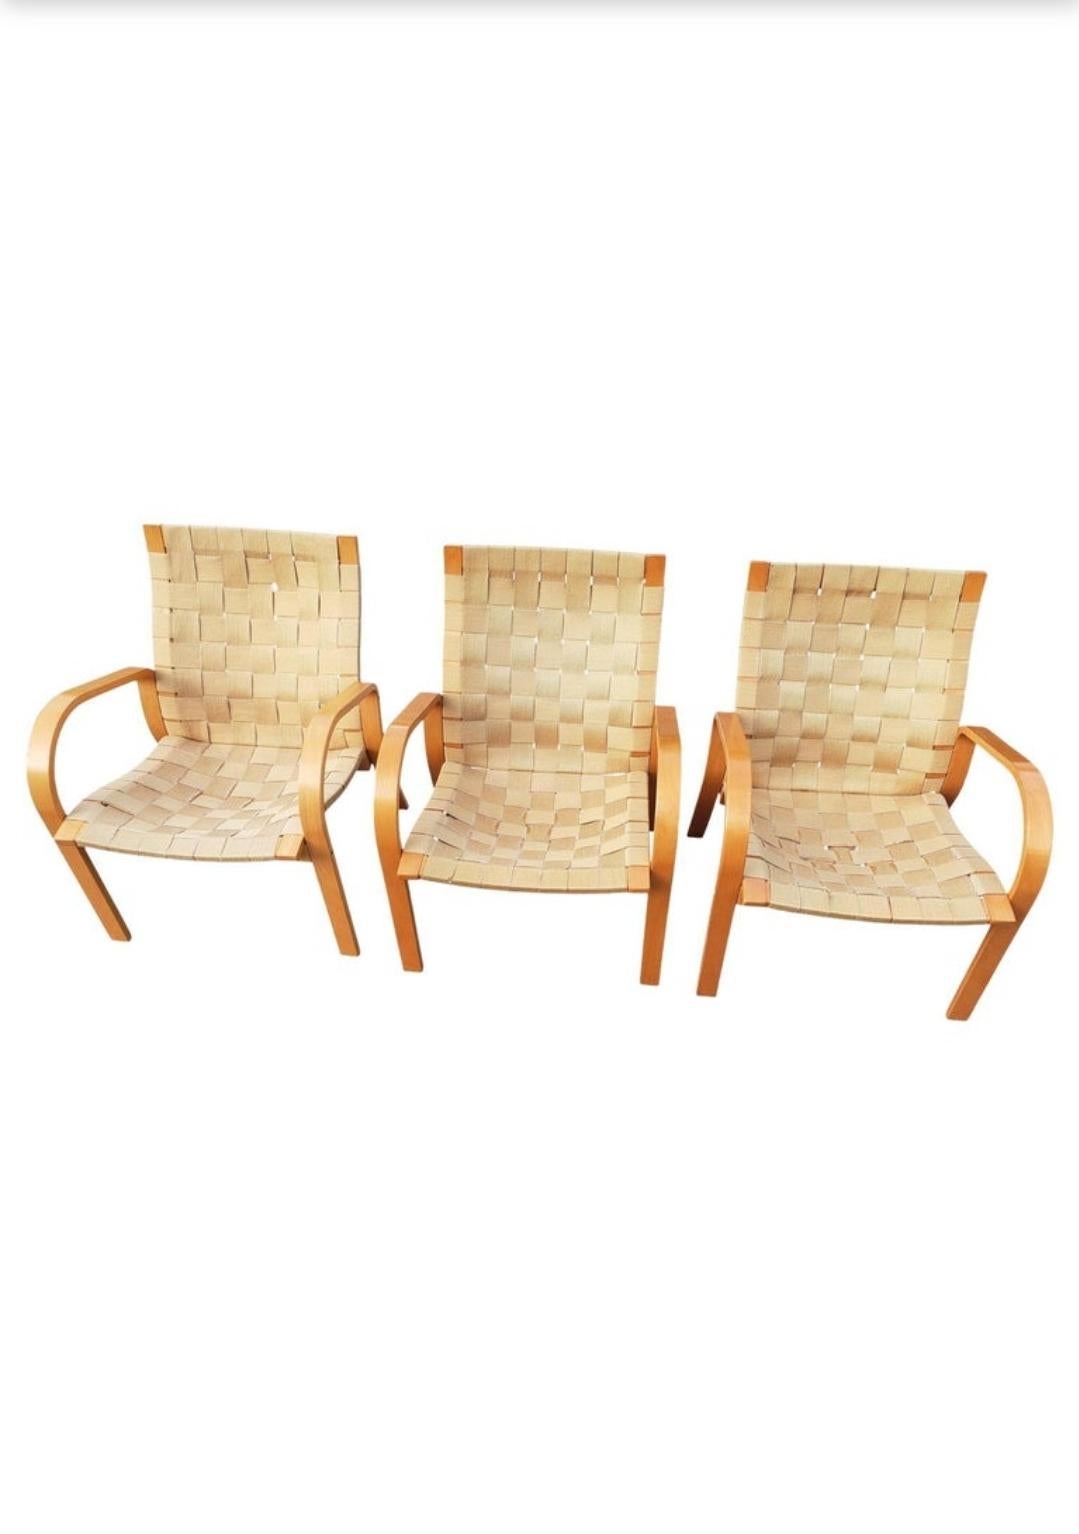 Chaise de salon en hêtre et toile, attribuée à Bruno Mathsson. The Modern Scandinavian.
Trois chaises en bois de hêtre laqué des années 1970 avec cerclage en toile tissée dorée. Cadre en Beeche en très bon état. Certaines des sangles en toile